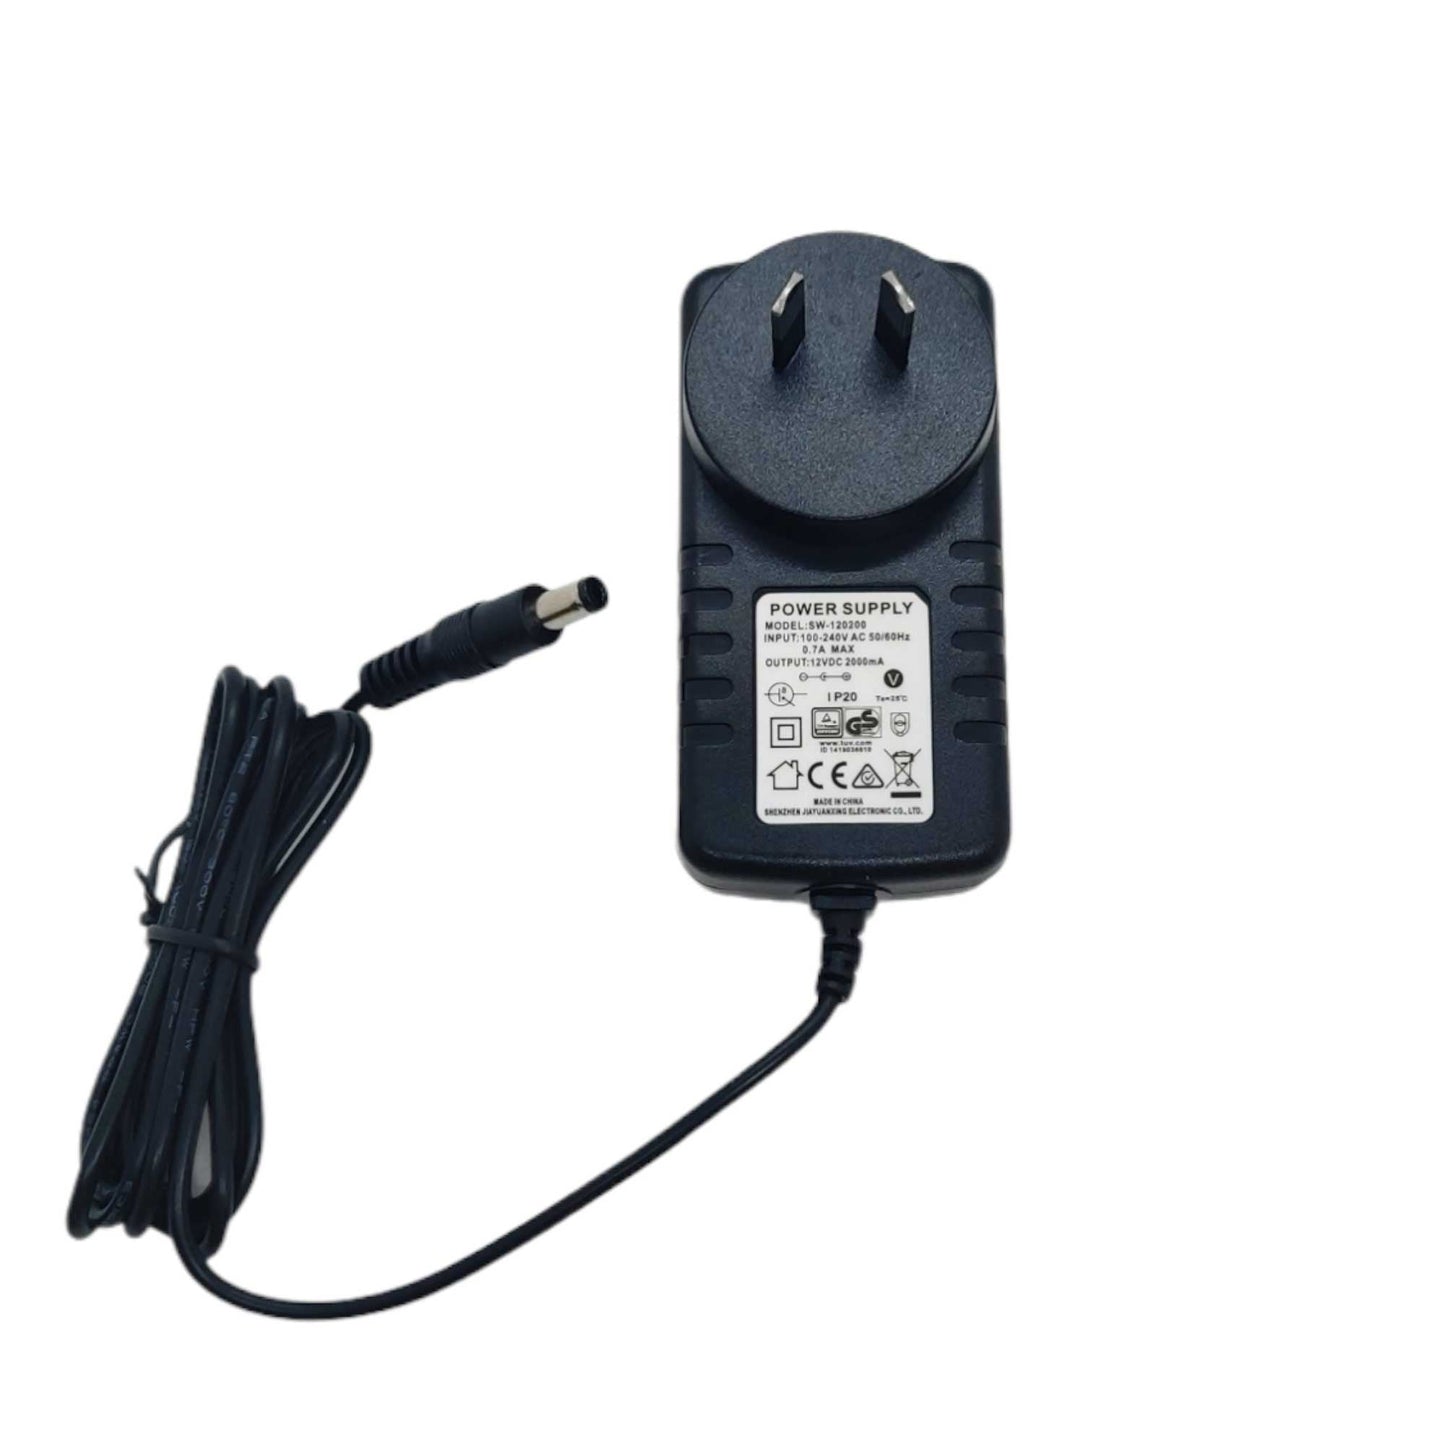 Electric Air Pump - 2 Way Inflator and Deflator - DC Adaptor + Car Lighter Plug